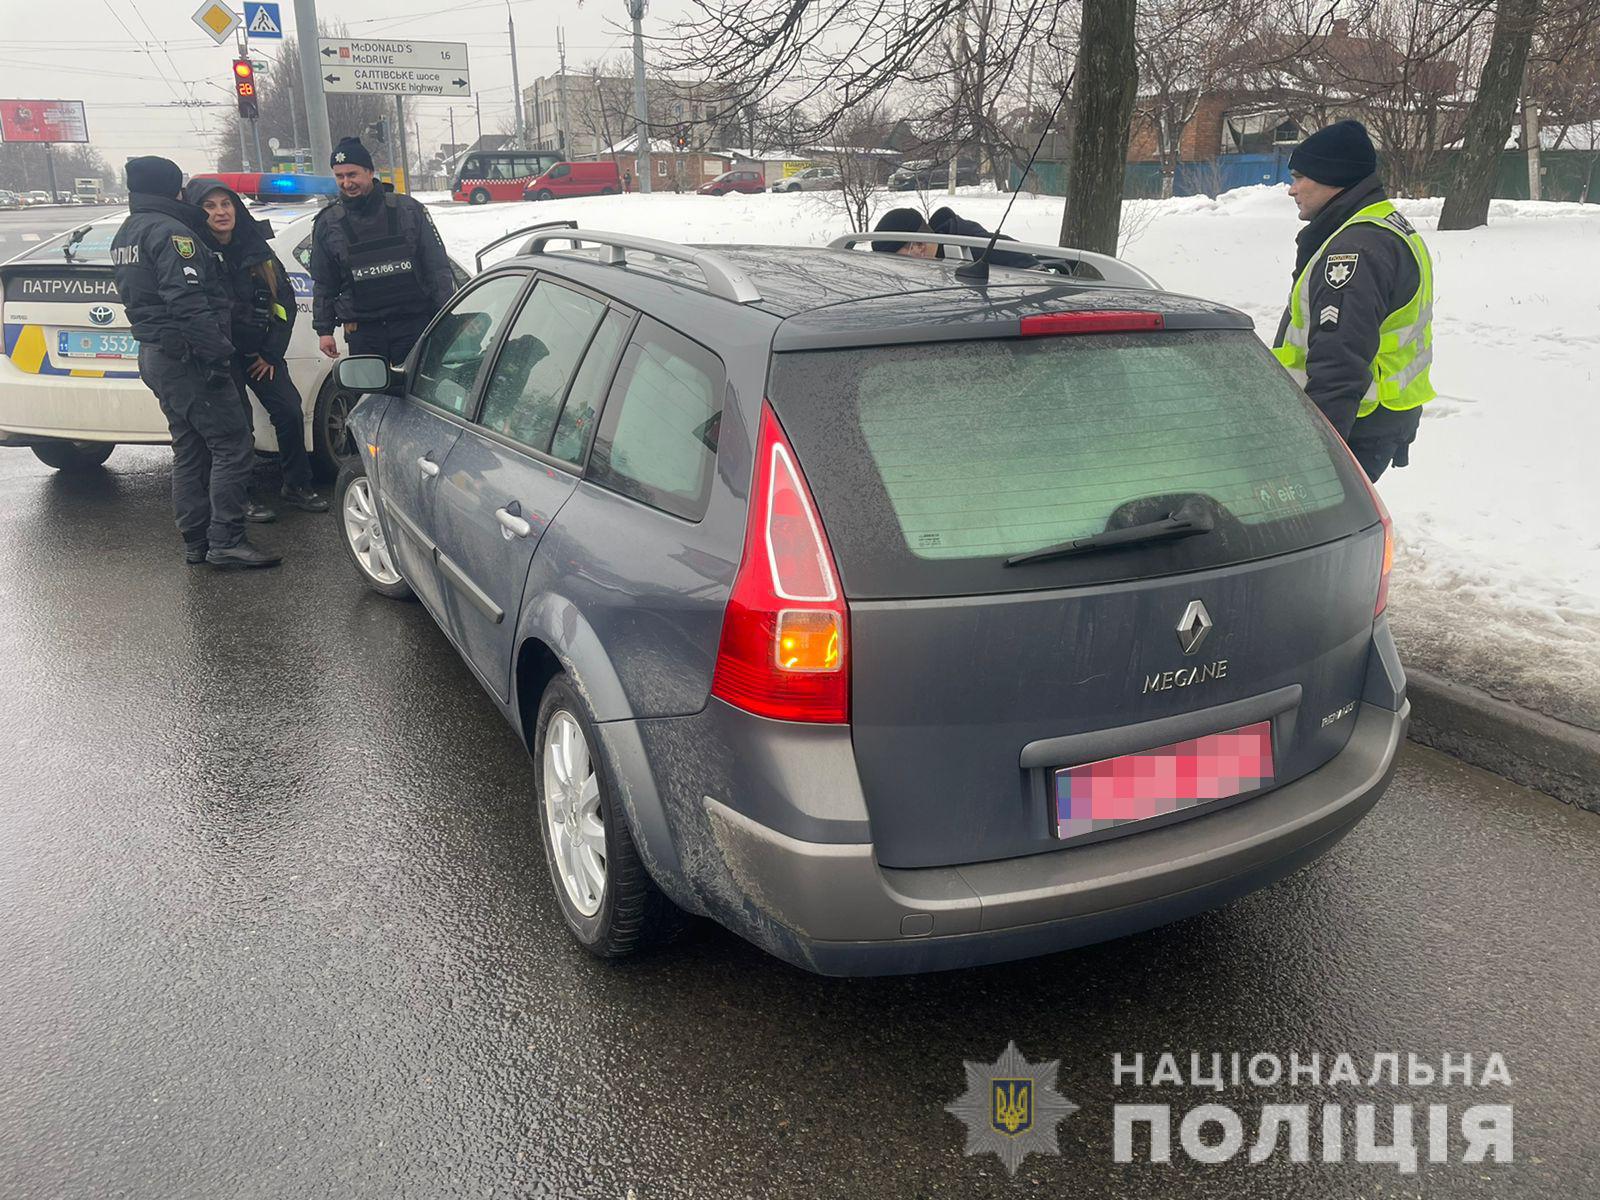 Криминал Харьков: Избили водителя маршрутки двое хулиганов на улице 12 Апреля